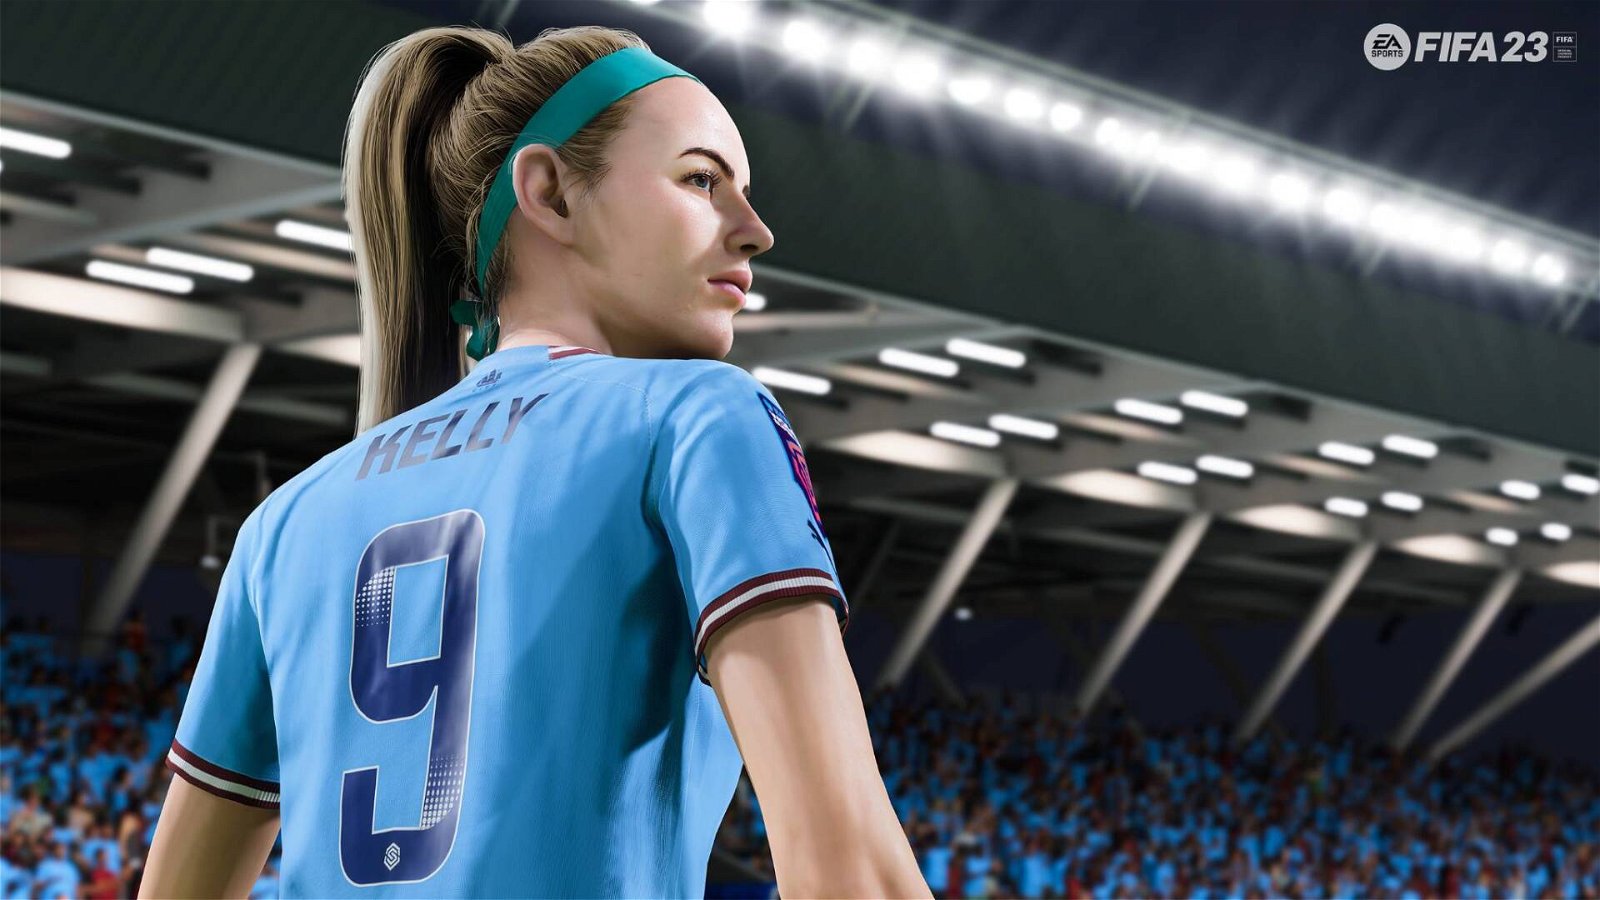 FIFA 23, l'aggiornamento 9 svela nuove squadre giocabili: ecco tutte le novità